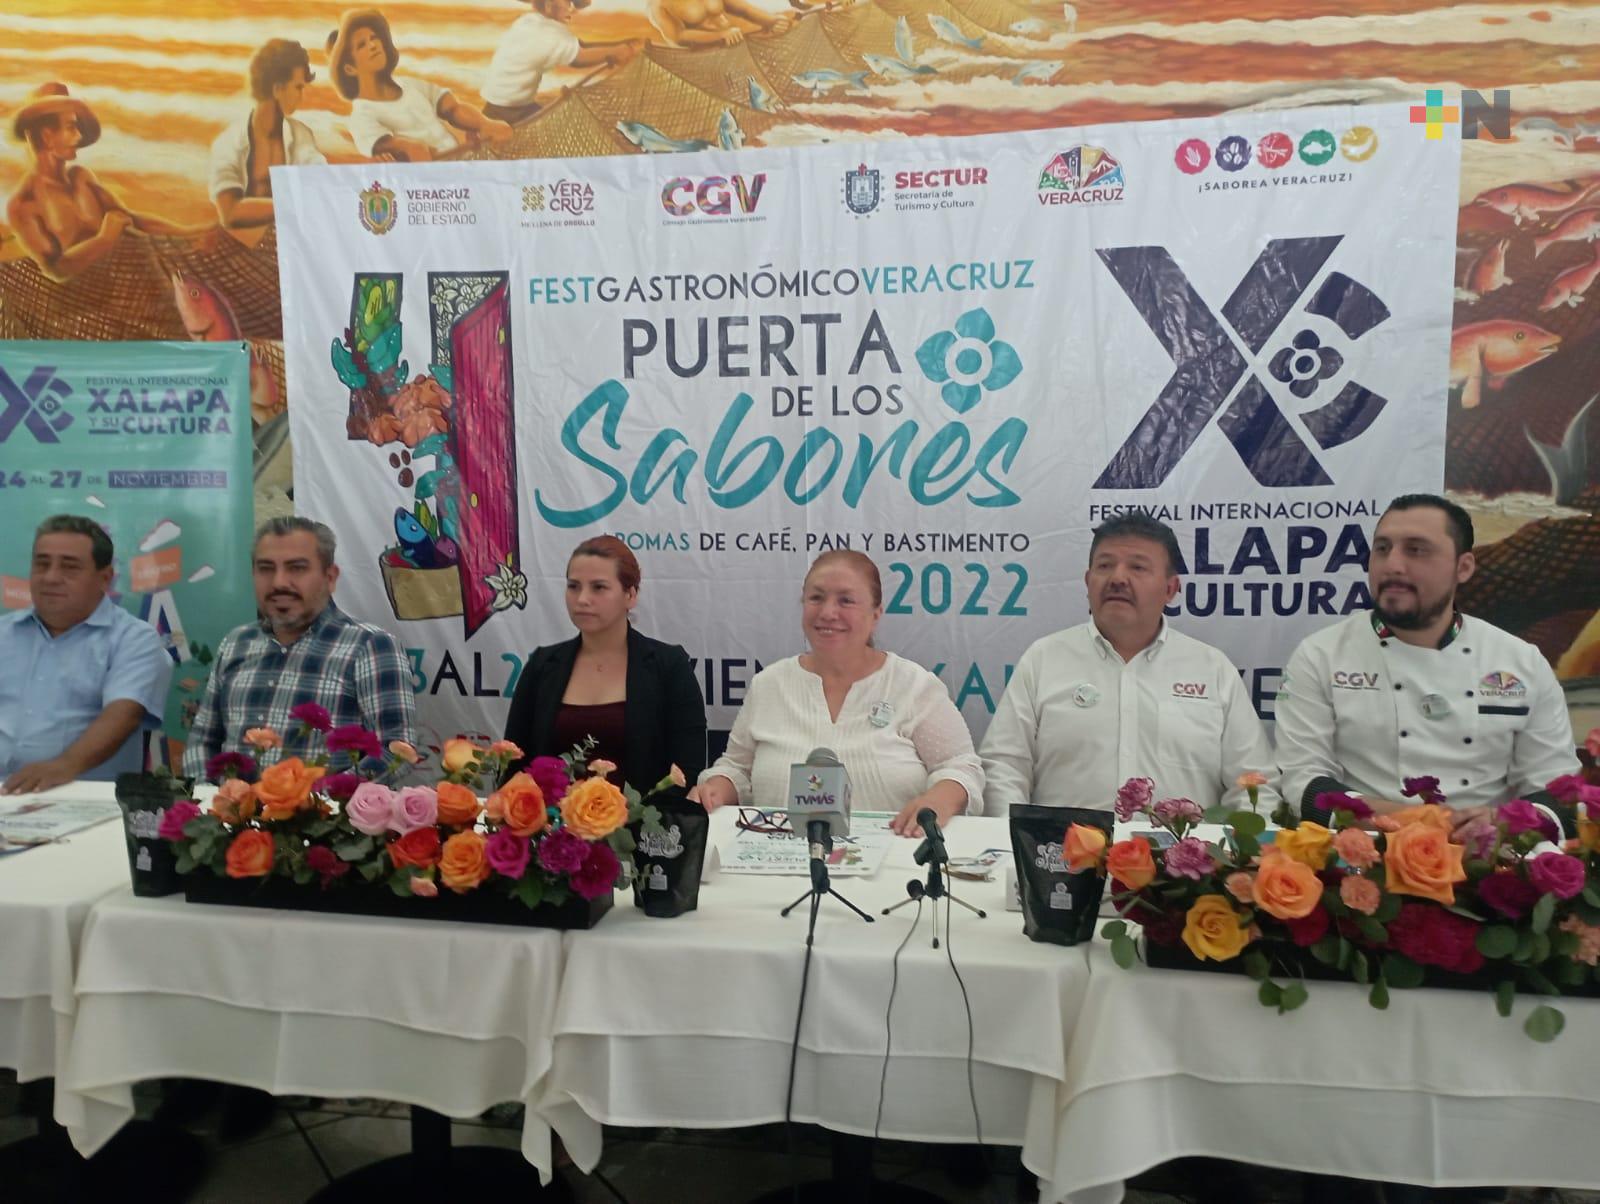 Para atraer turistas, Xalapa albergará festivales gastronómico y de cultura